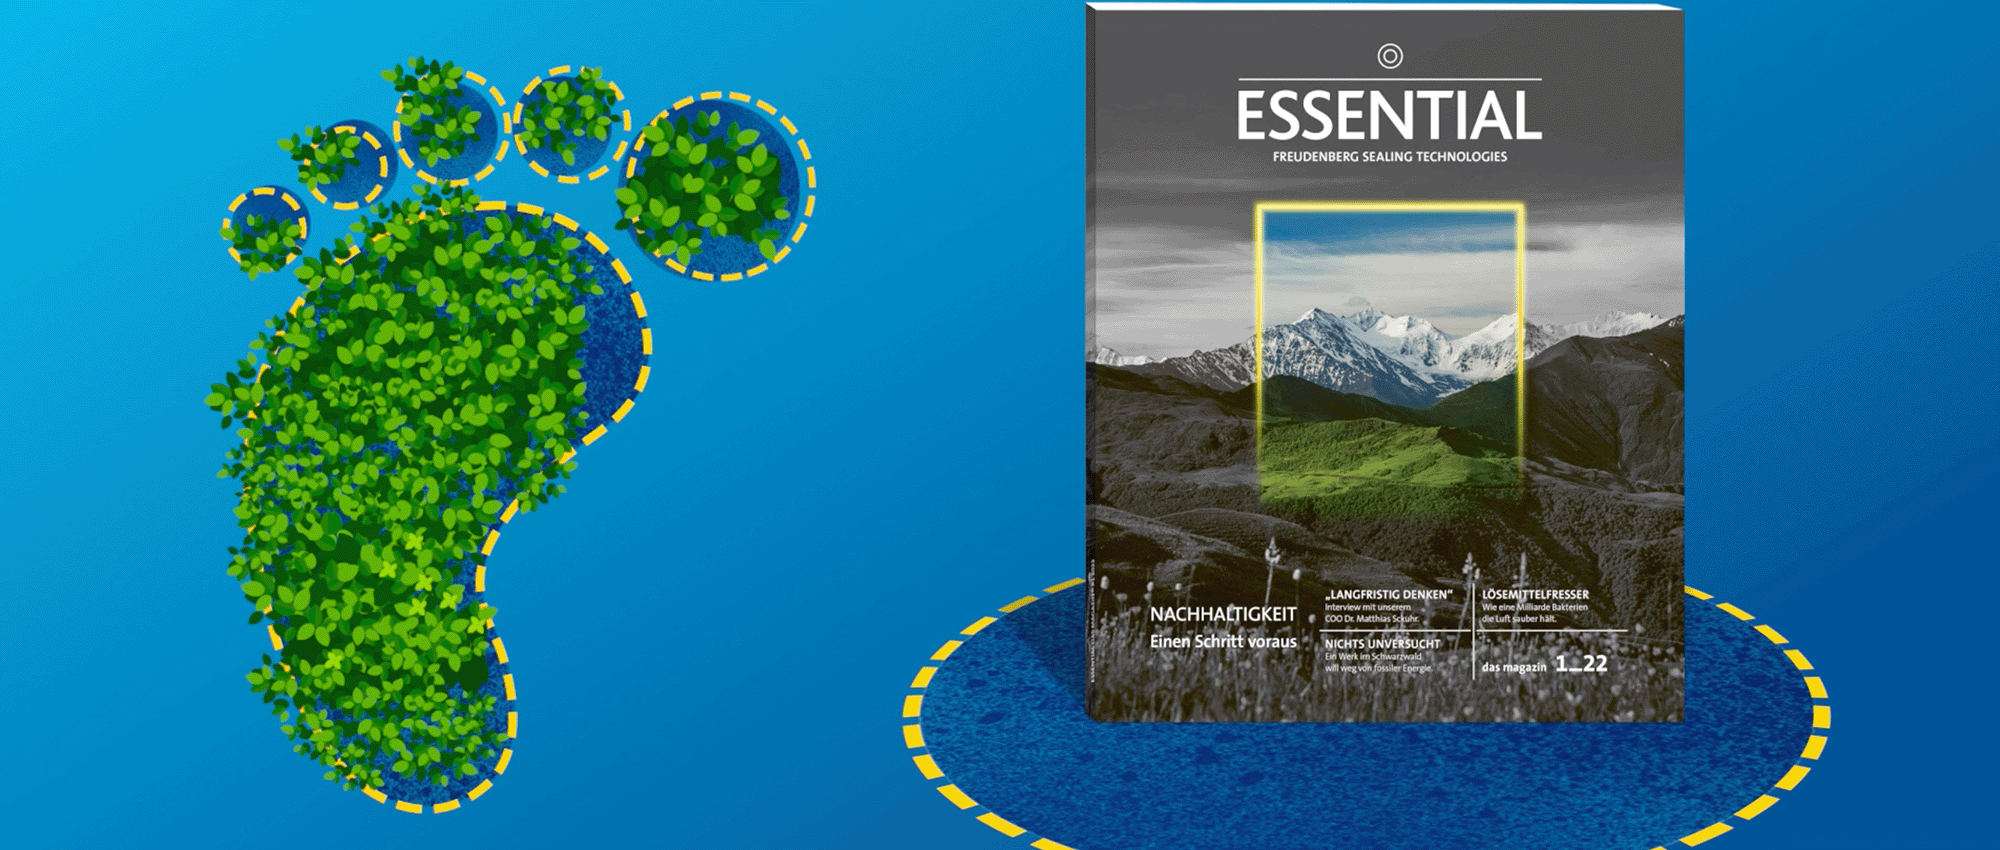 Auf der linken Seite ist eine Illustration von Pflanzen in Form eines Fußabdruckes und rechts davon steht das Essential-Magazin vor einem blauen Hintergrund.